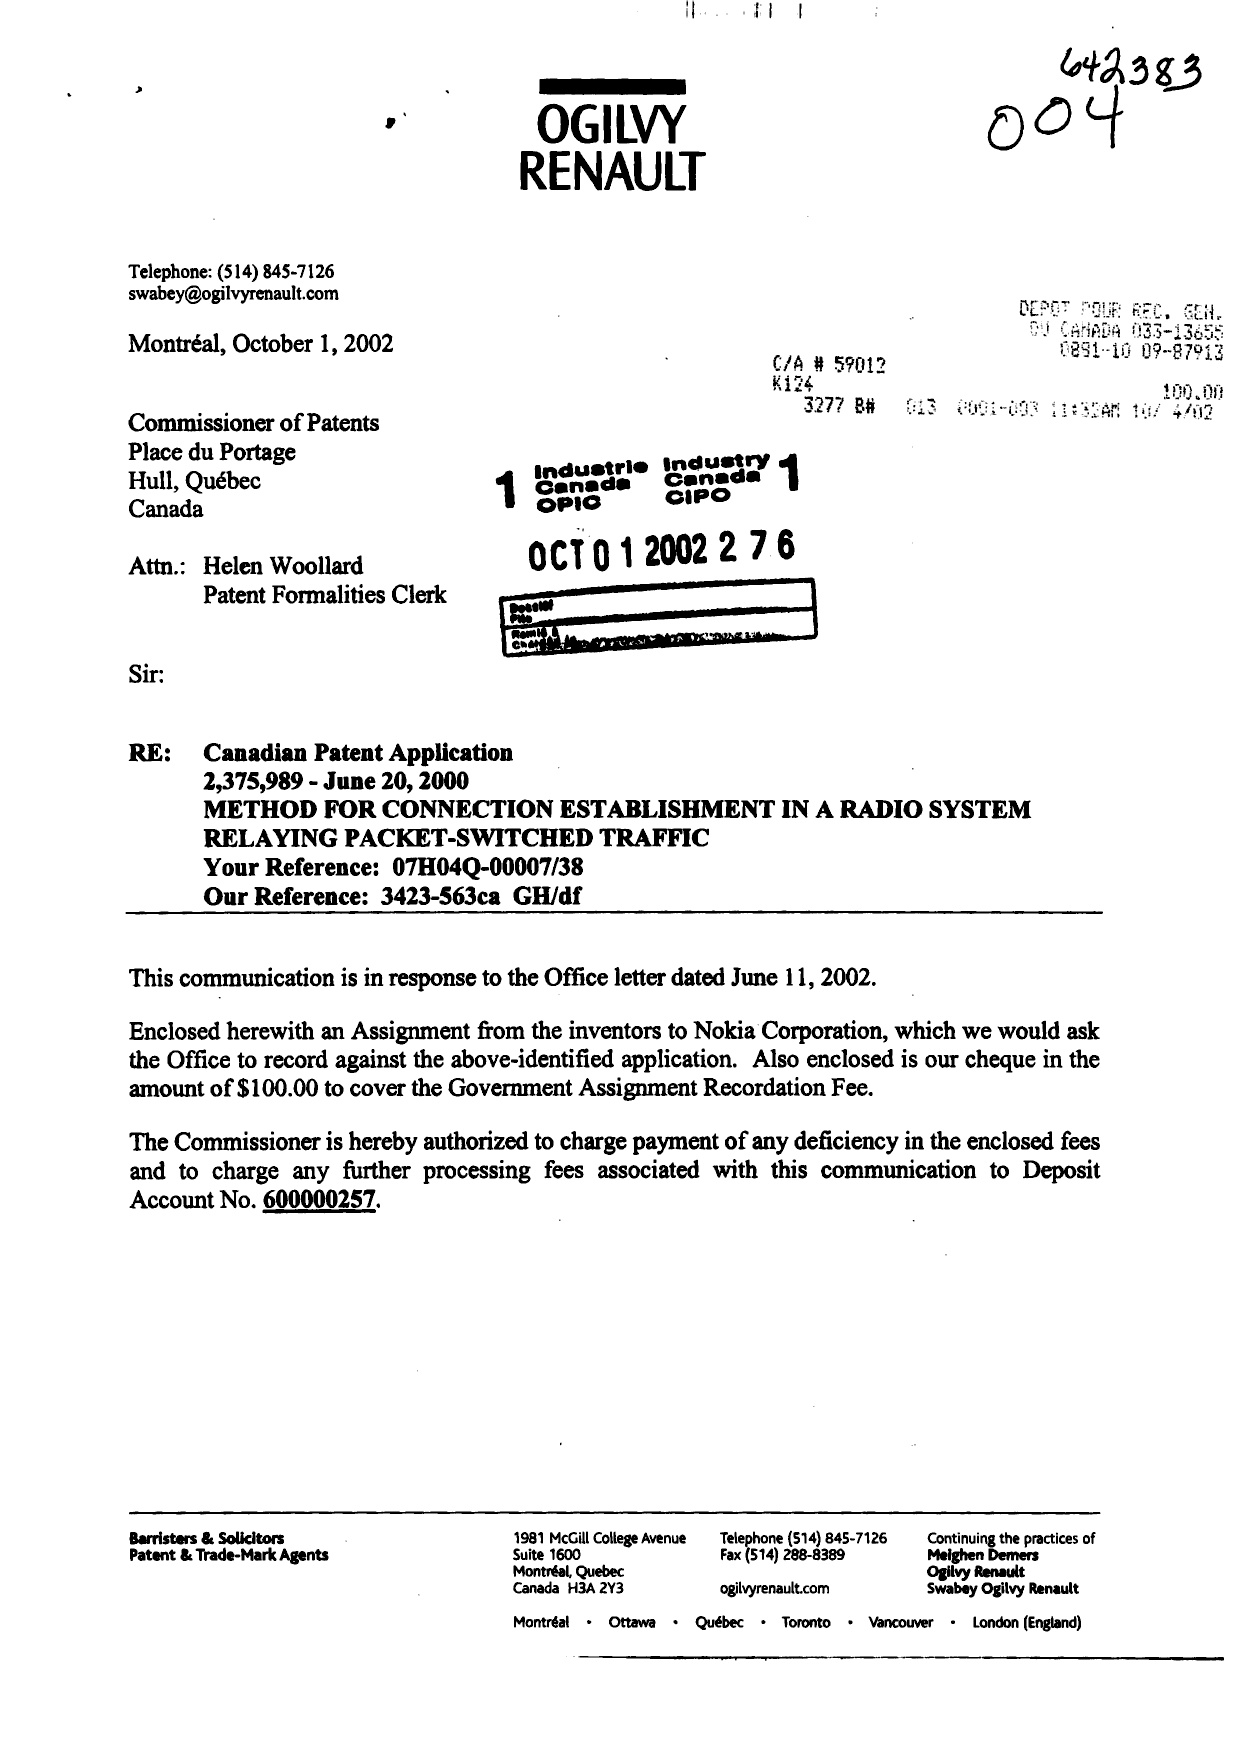 Document de brevet canadien 2375989. Cession 20021001. Image 1 de 3